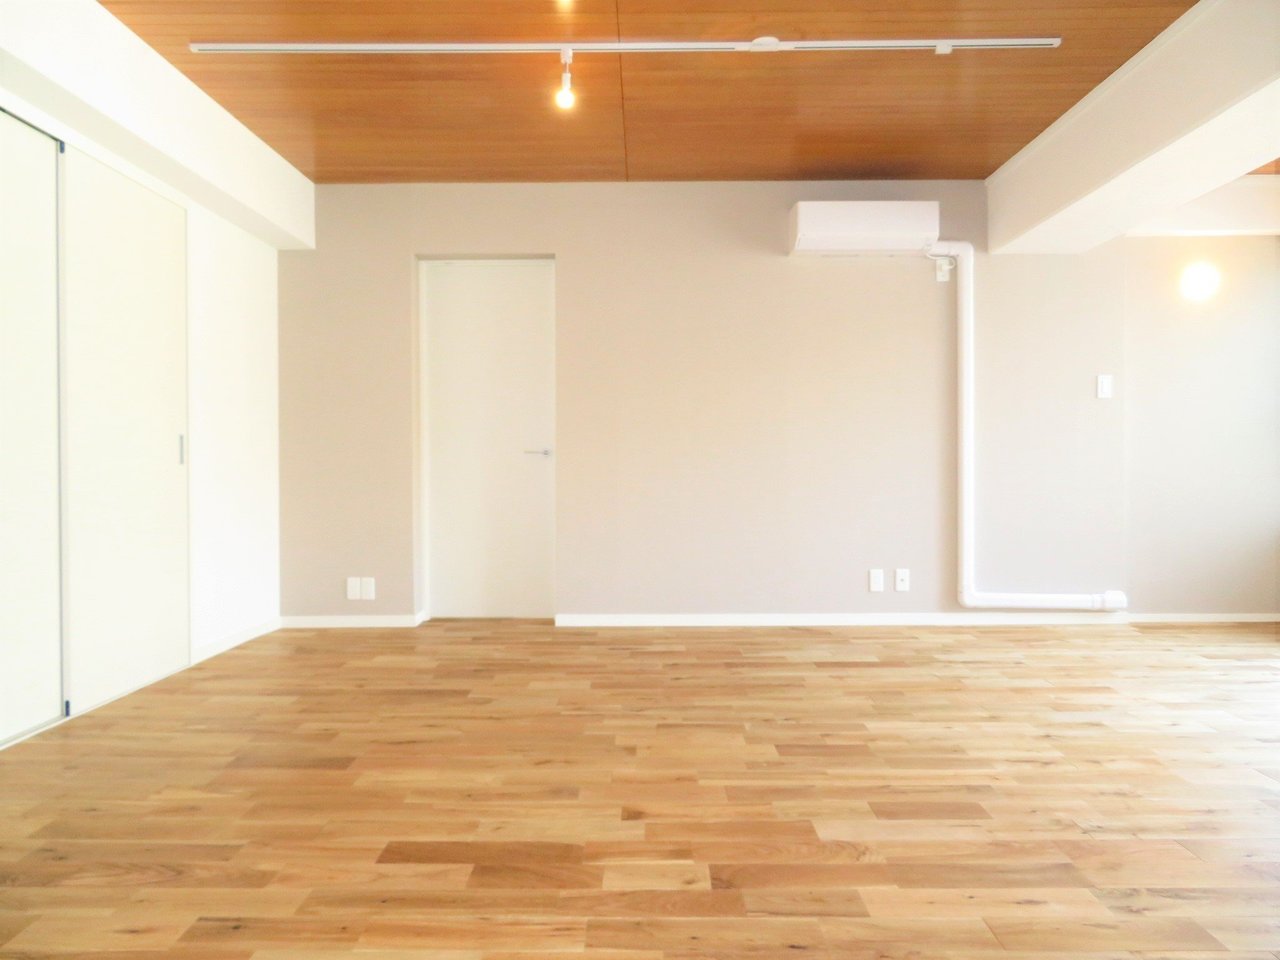 床はオークの無垢材が使用されています。広々と開放感のあるリビングから3部屋がそれぞれ繋がっている間取りなので、リビングはみんなが必ず集まる場所になりそうです。